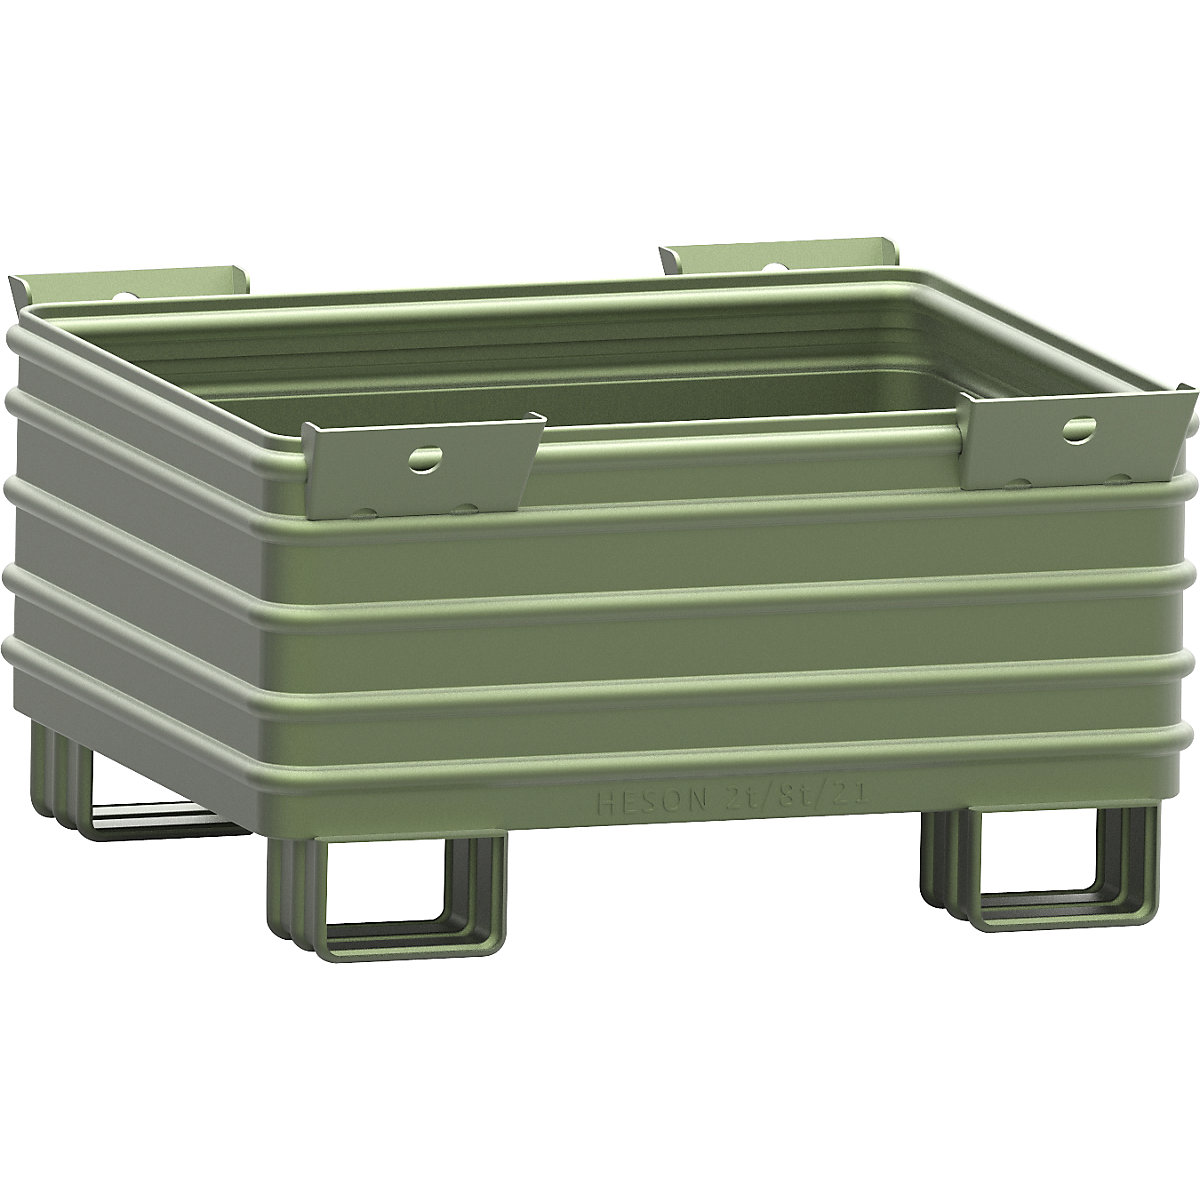 Schwerlast-Stapelbehälter Heson, BxL 1000 x 1200 mm, mit U-förmigen Füßen, grün lackiert, ab 1 Stk-6